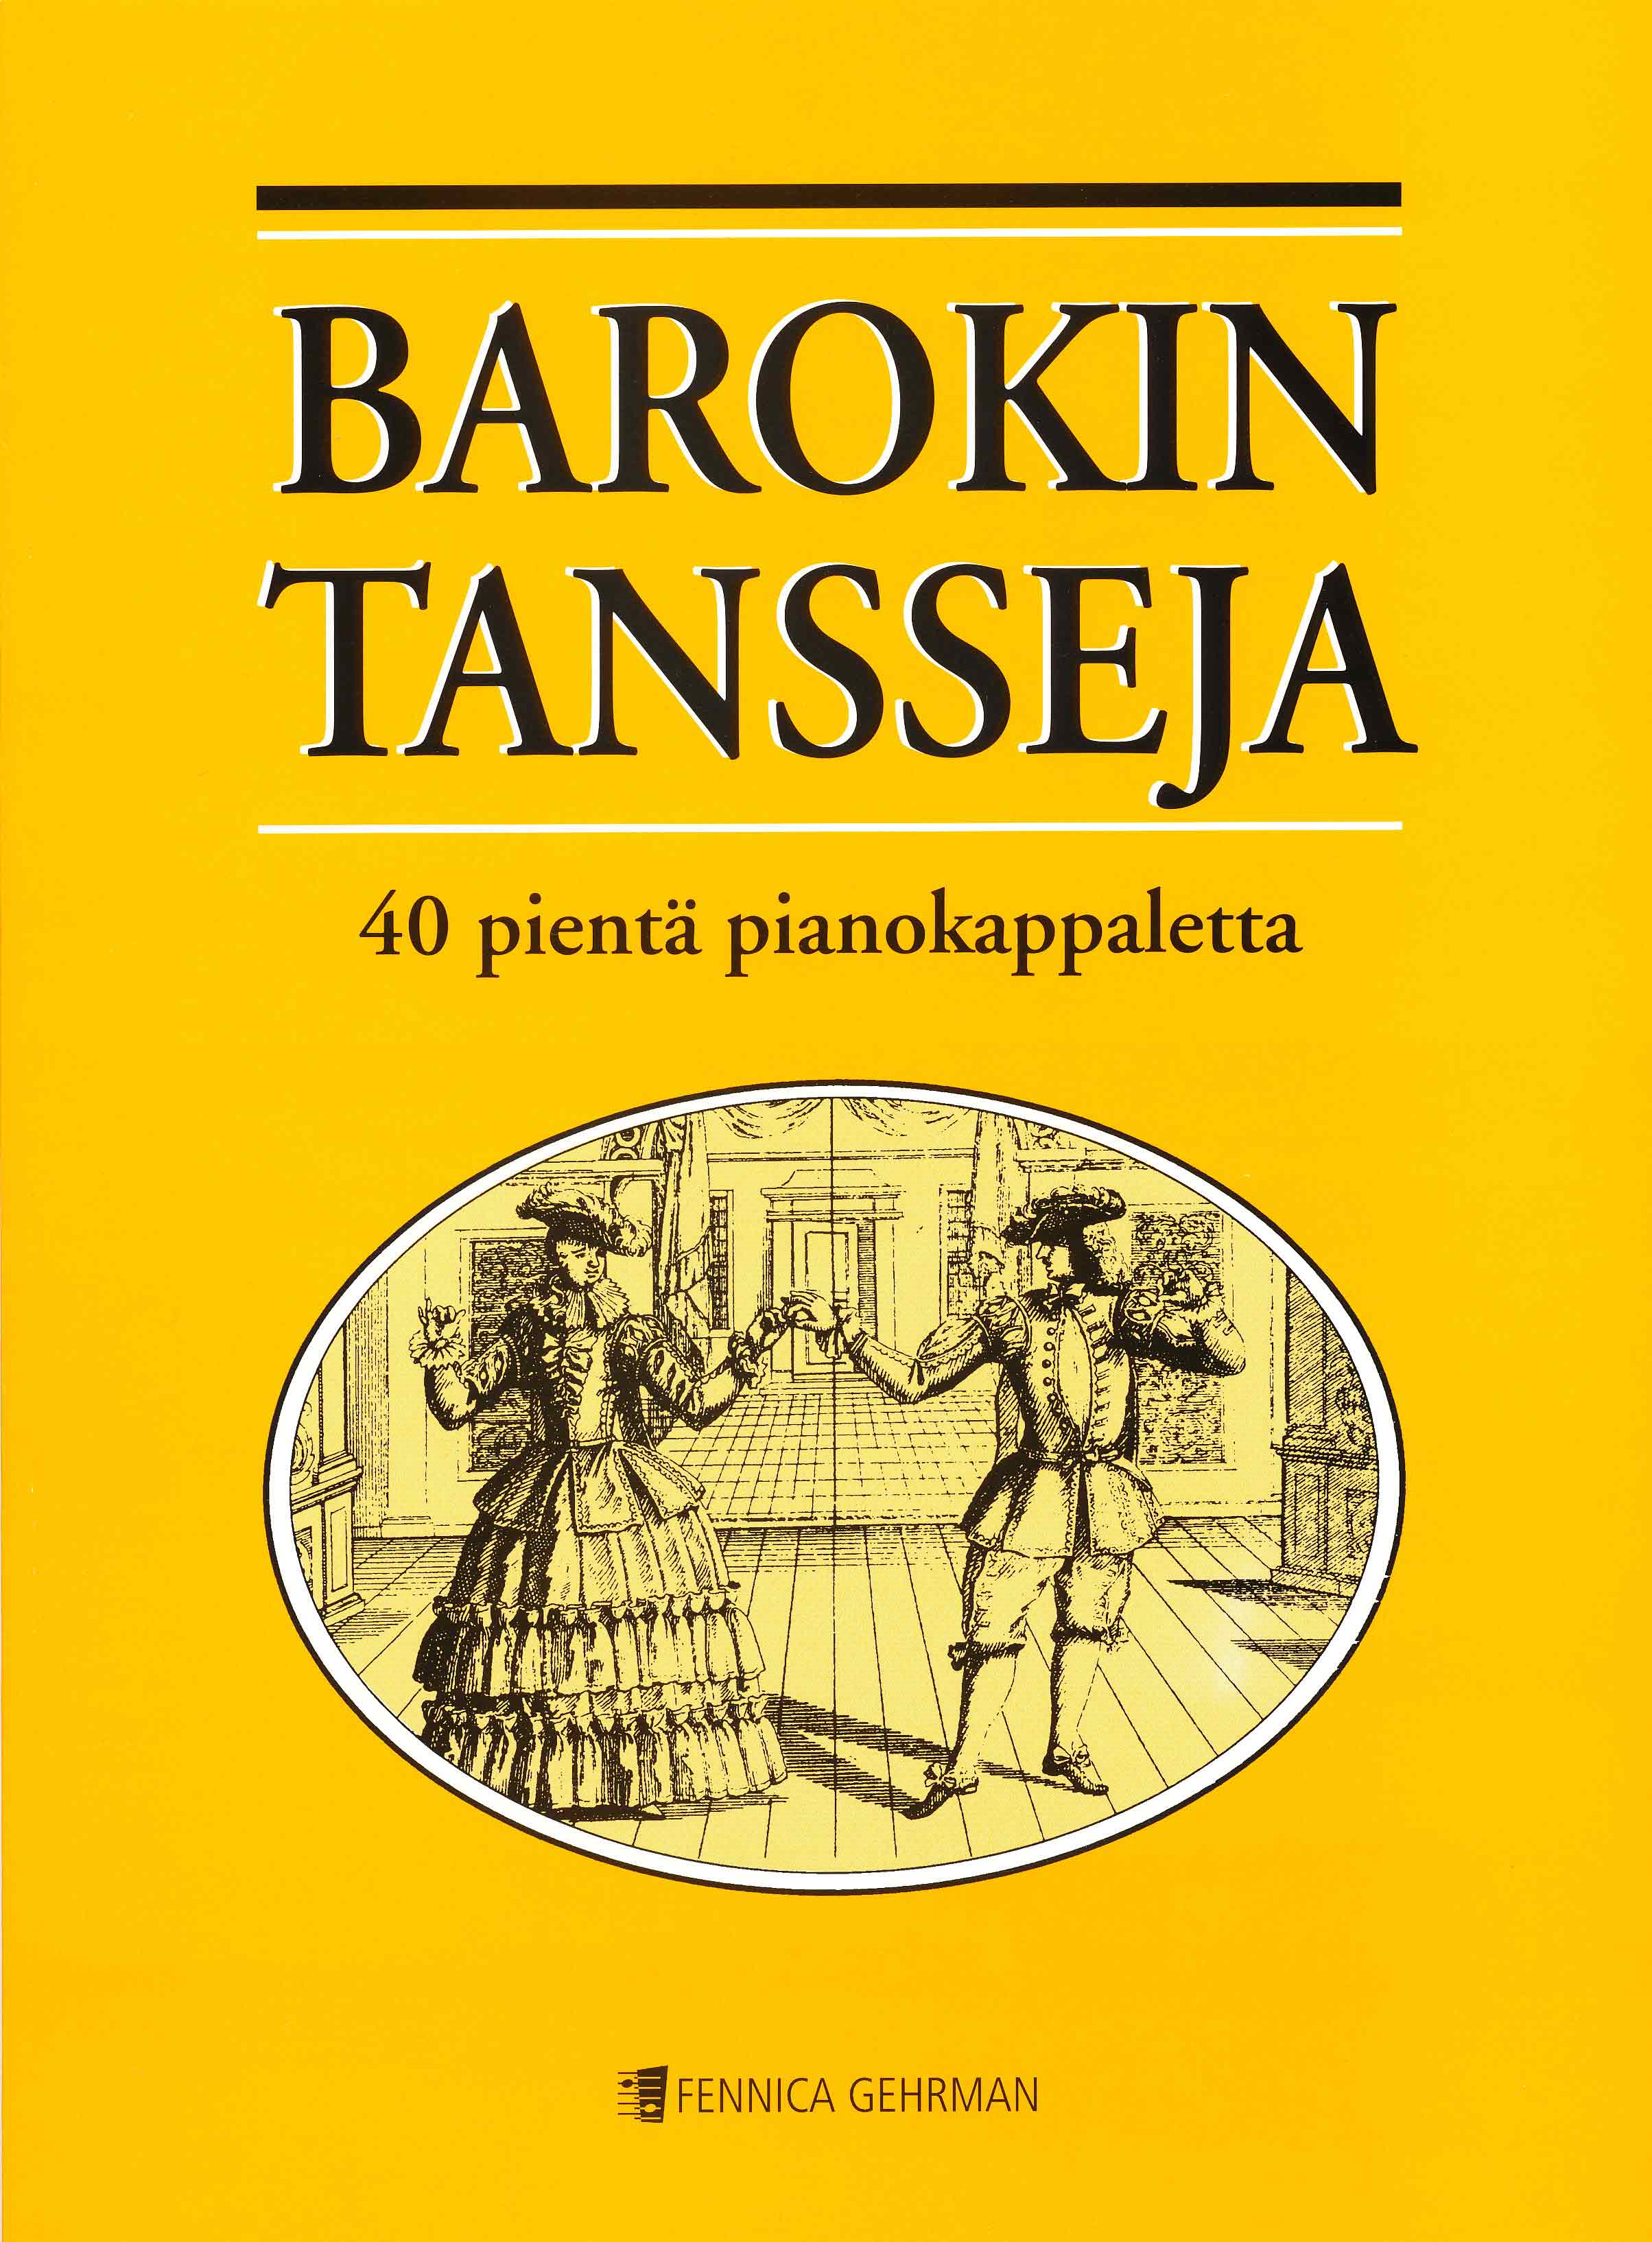 Barokin tansseja (40 pientä pianokappaletta)(Móró)